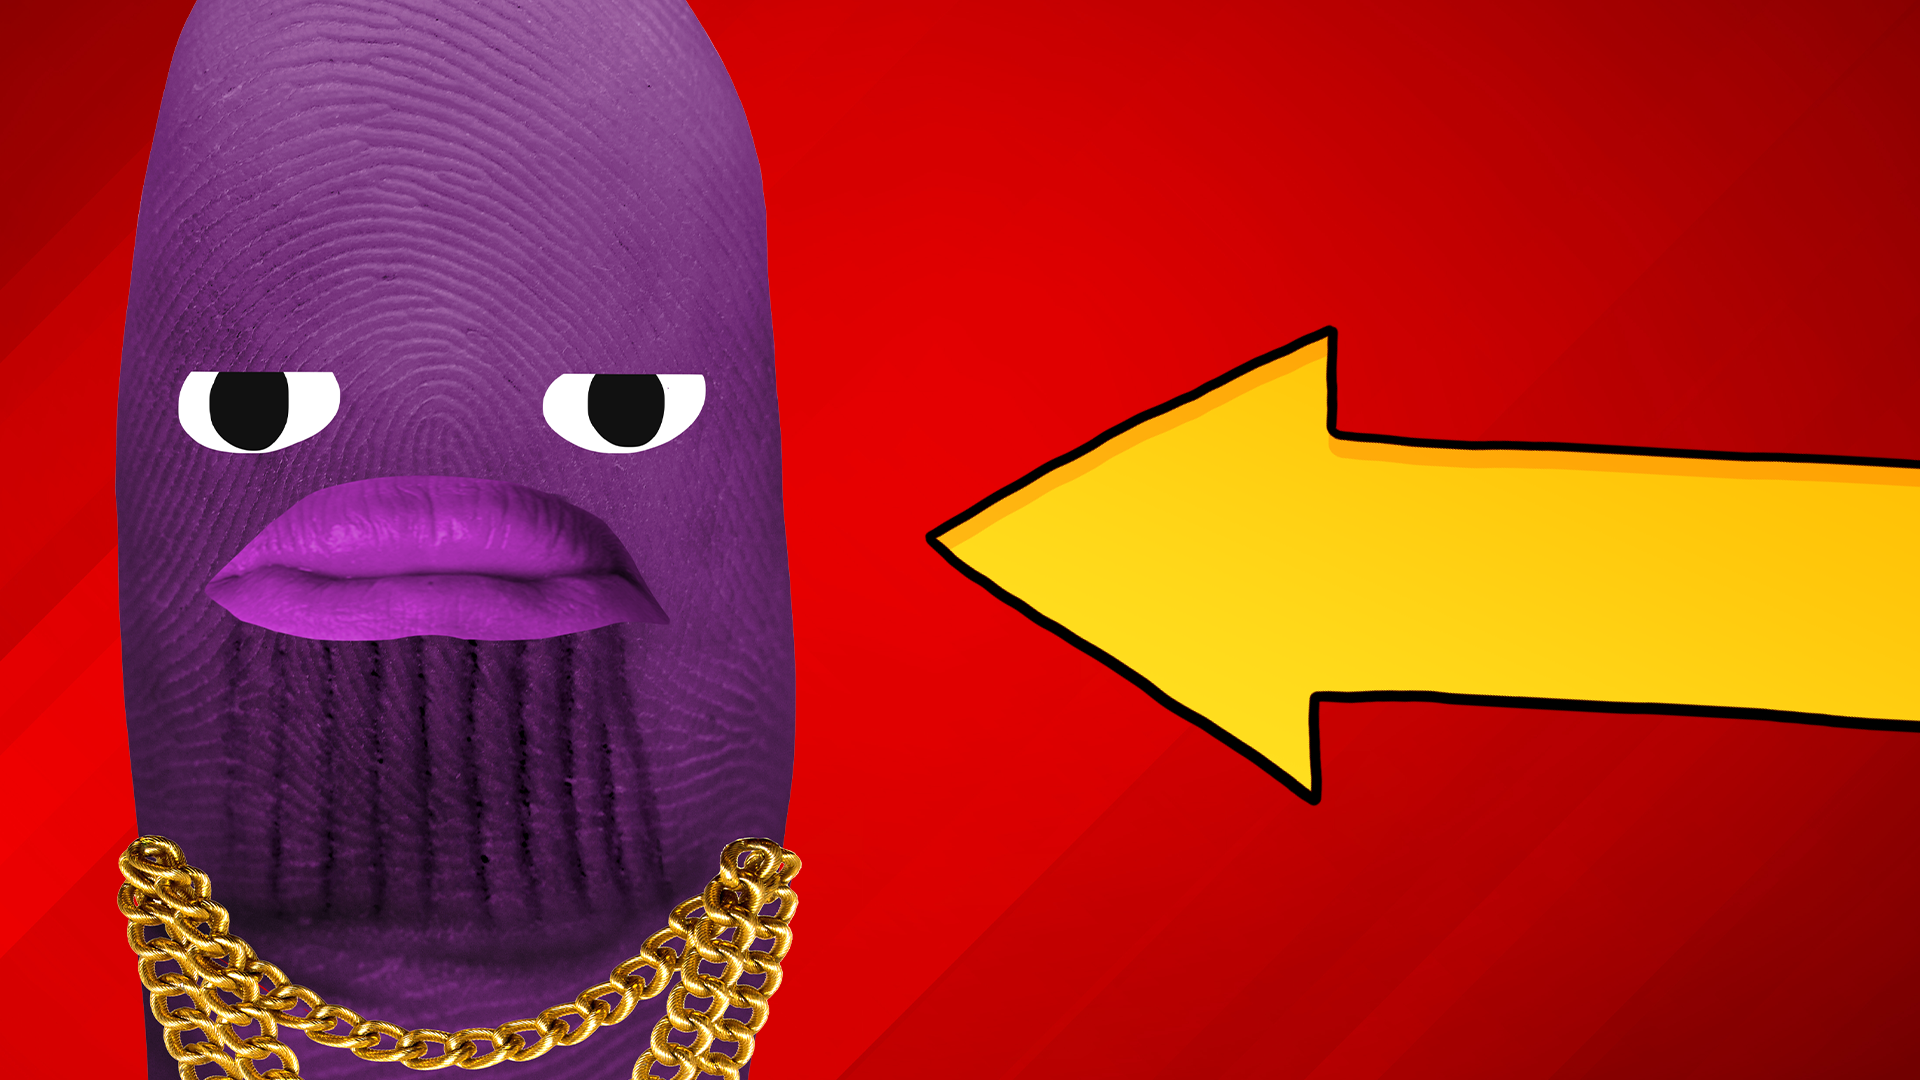 Thanos thumb with arrow